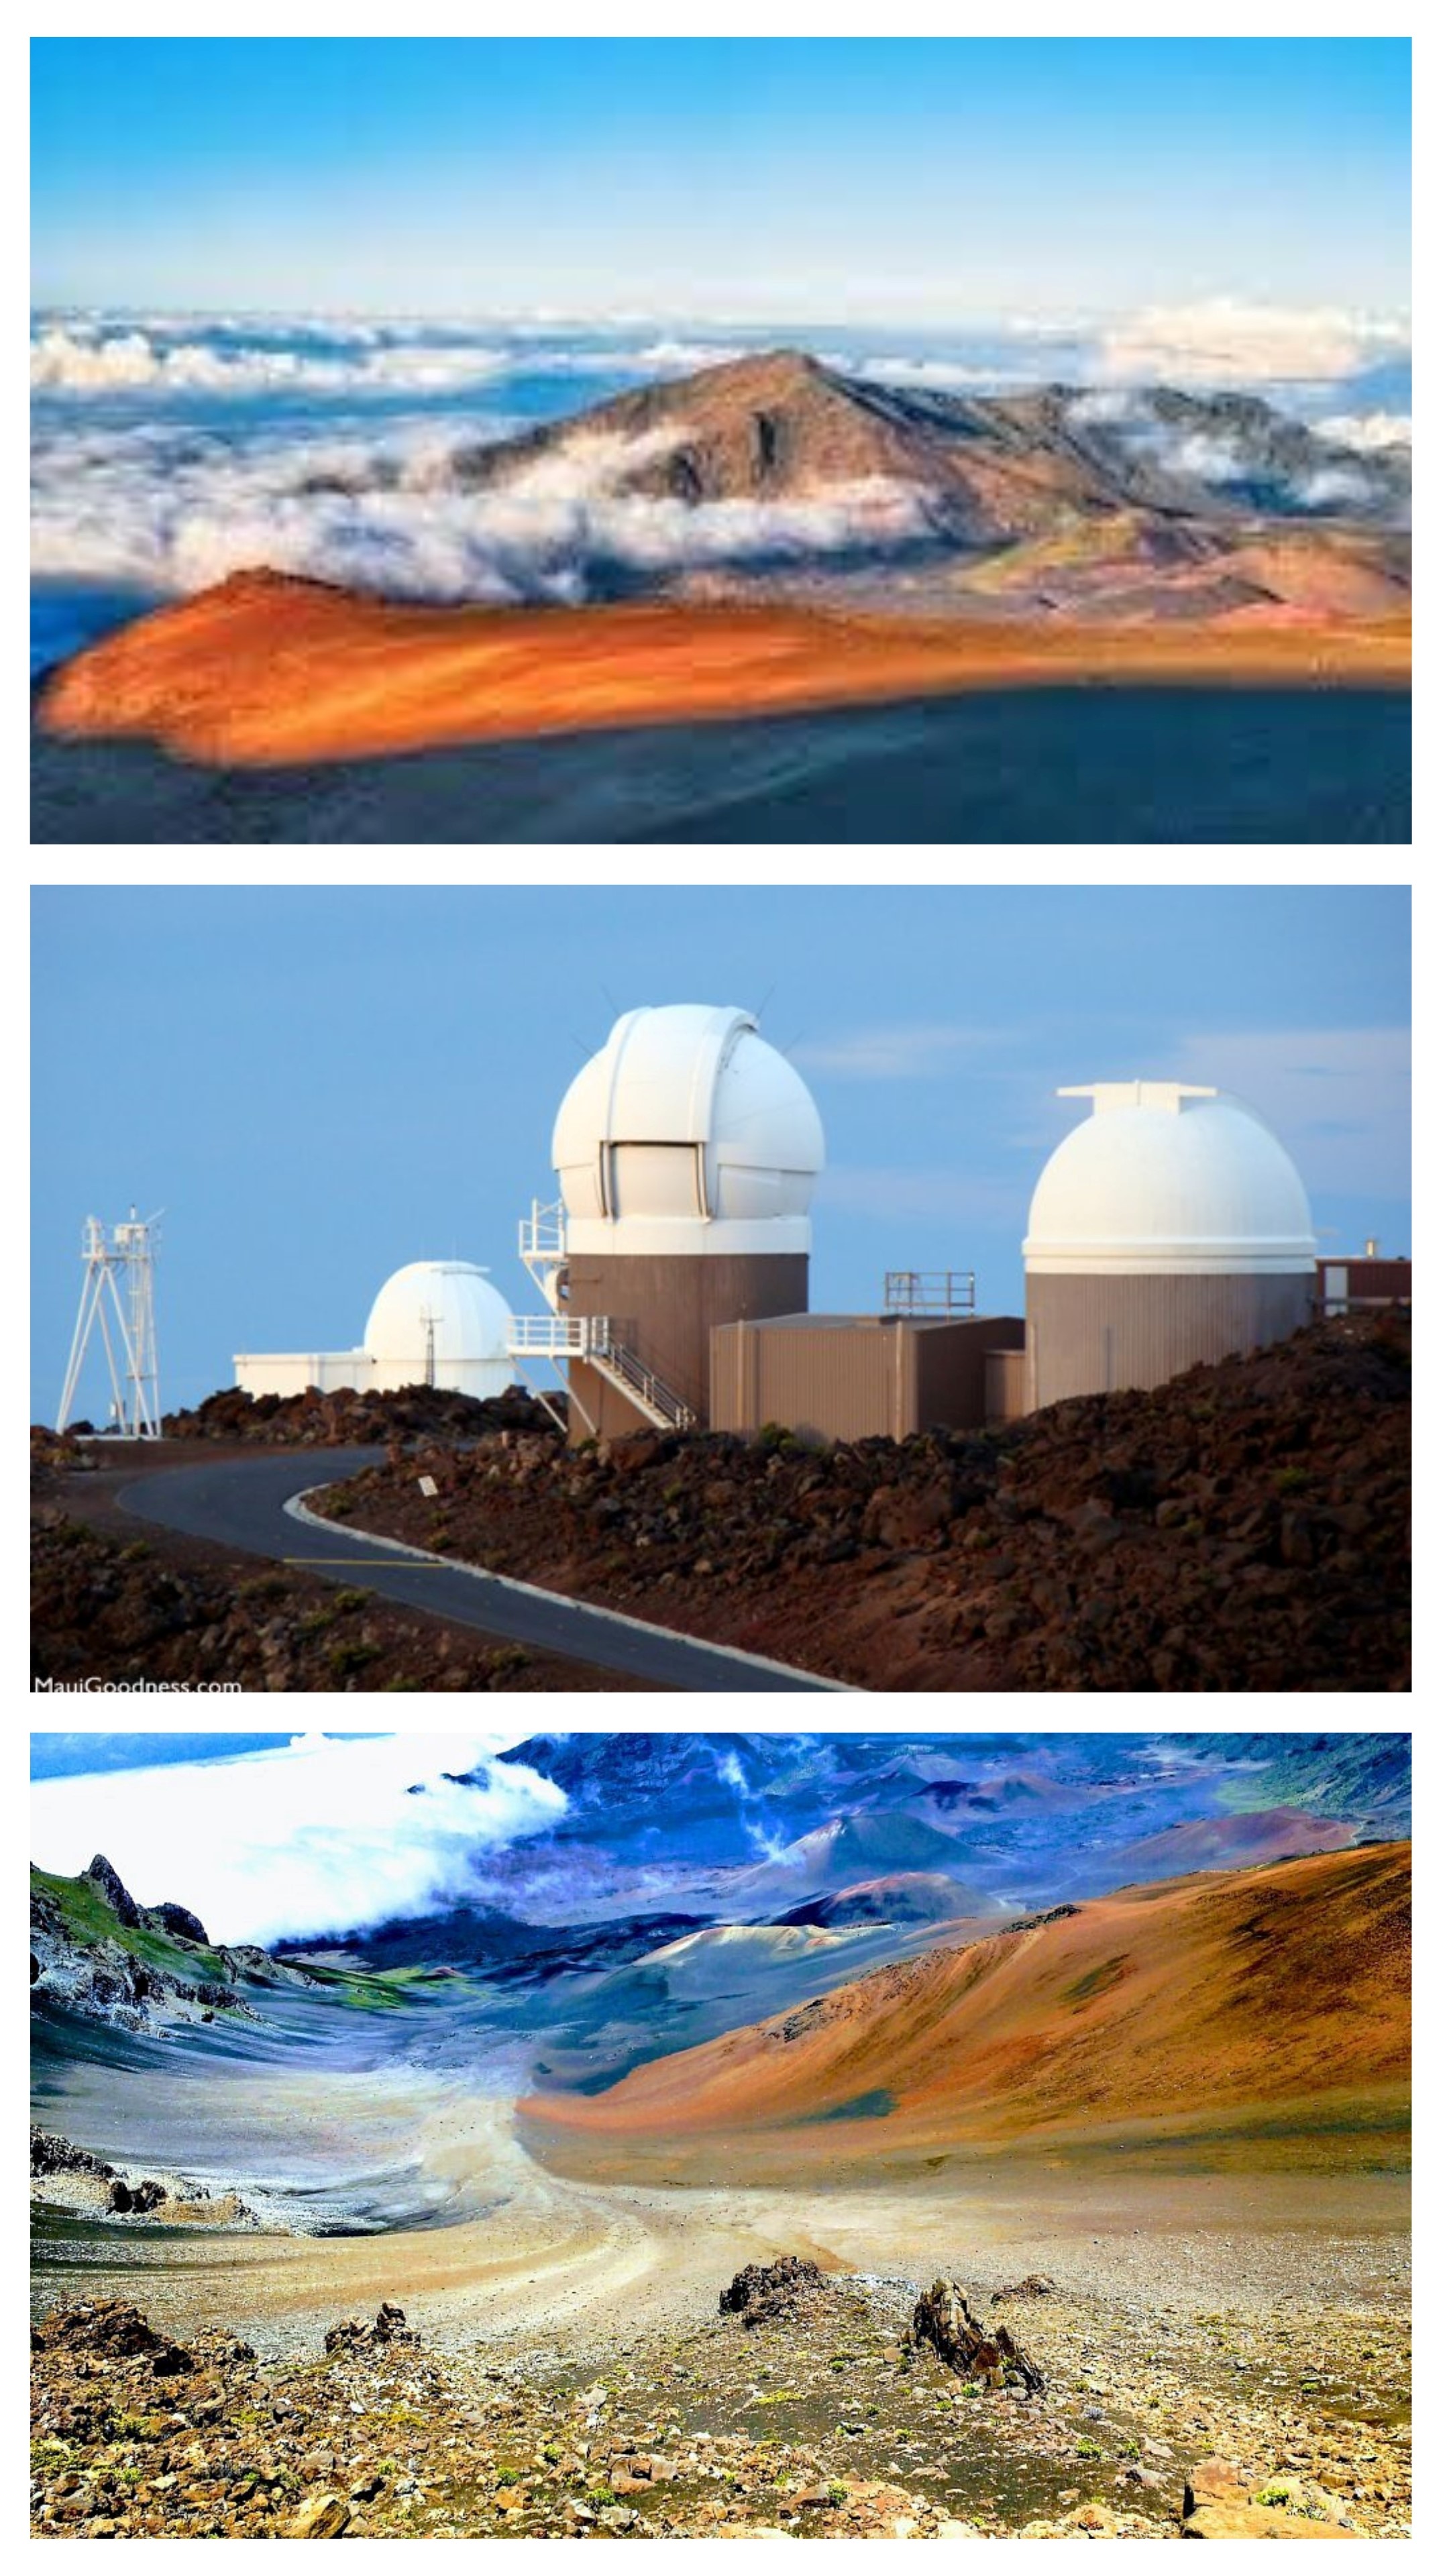 Maui Space Surveillance Complex images